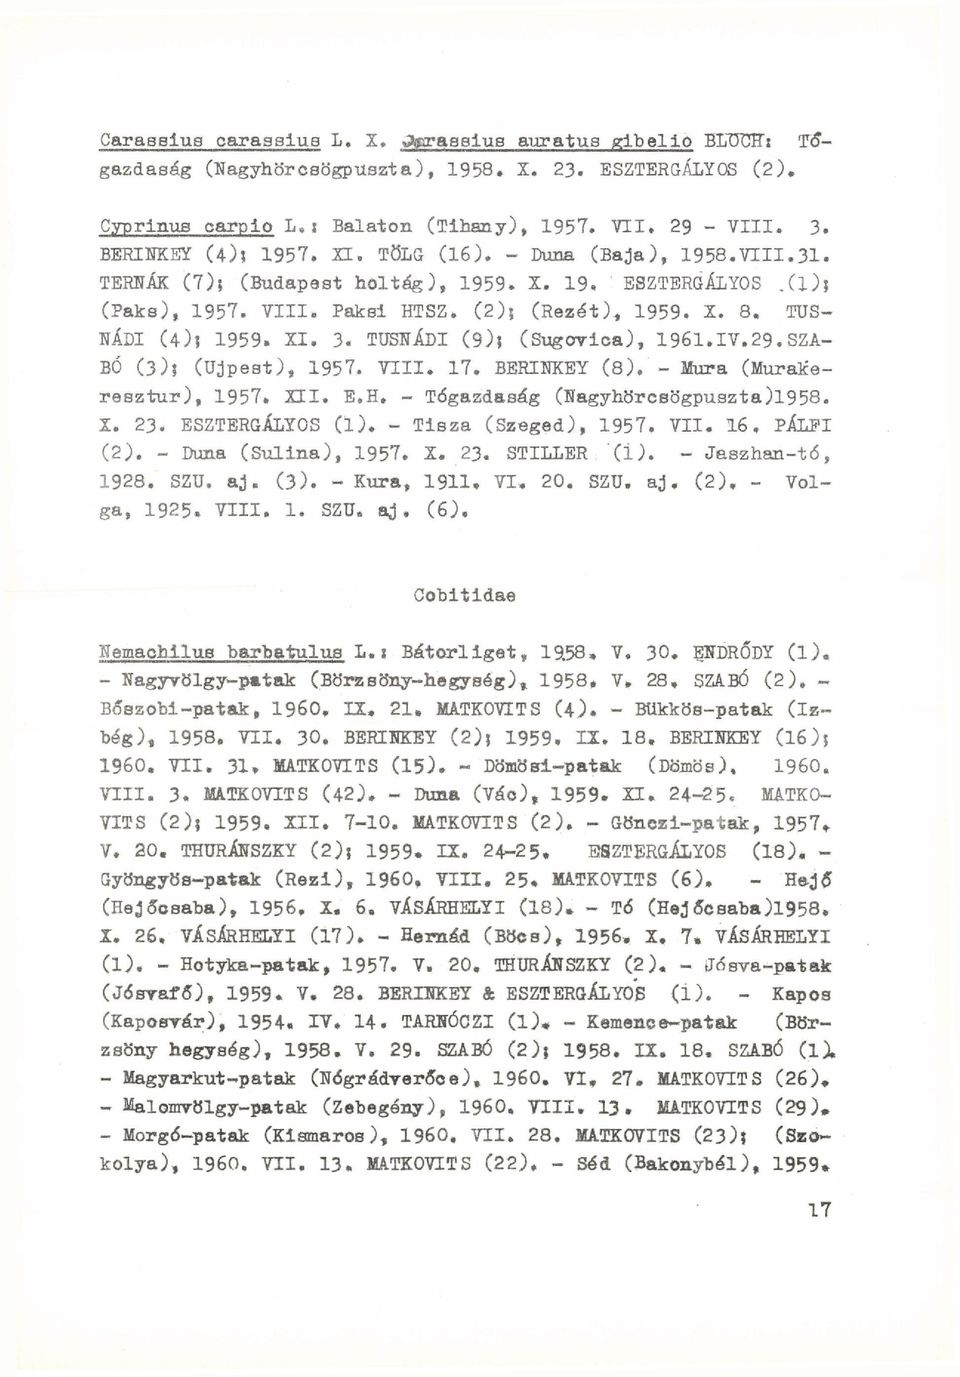 TUS NÁDI (4); 1959. XI. 3. TUSNÁDI (9); (Sugovica), 1961.IV.29.SZA BÓ (3)j (Újpest), 1957. VTII. 17. BERINKEY (8). - Mura (Murakeresztur), 1957. XII. E.H. - Tógazdaság (Nagyhörcsögpuszta)l958. X. 23.